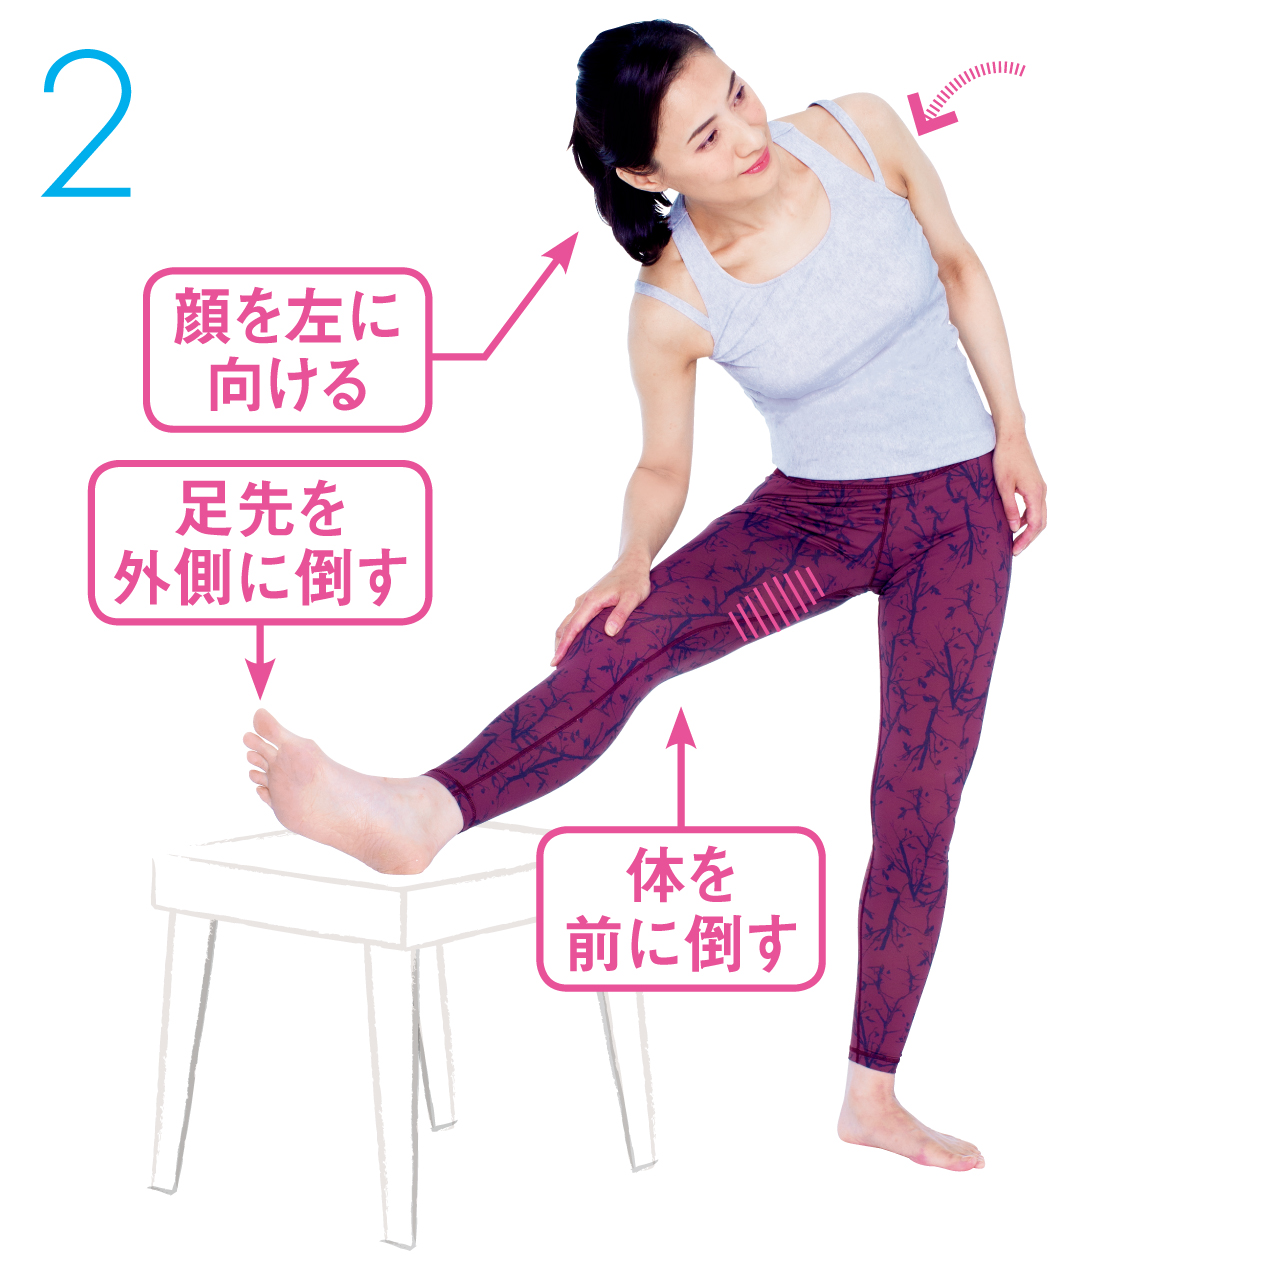 １の姿勢を維持したまま、体を椅子（またはベッド）のほうに倒します。太もも内側の筋肉が伸びているのを確認して、30秒キープ